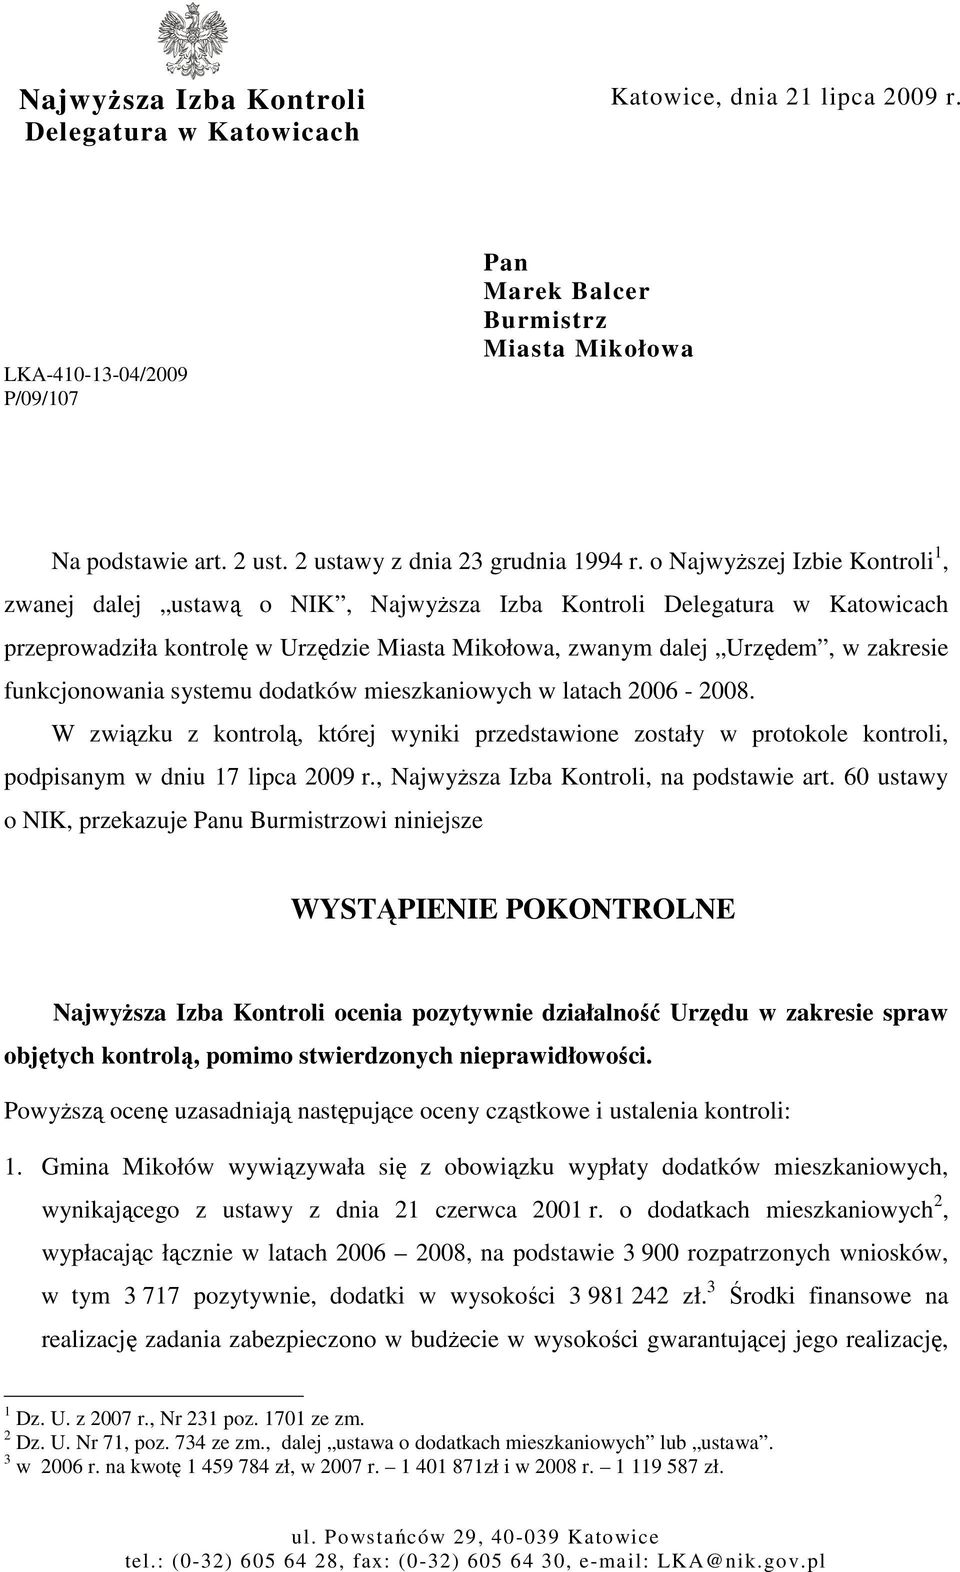 o NajwyŜszej Izbie Kontroli 1, zwanej dalej ustawą o NIK, NajwyŜsza Izba Kontroli Delegatura w Katowicach przeprowadziła kontrolę w Urzędzie Miasta Mikołowa, zwanym dalej Urzędem, w zakresie